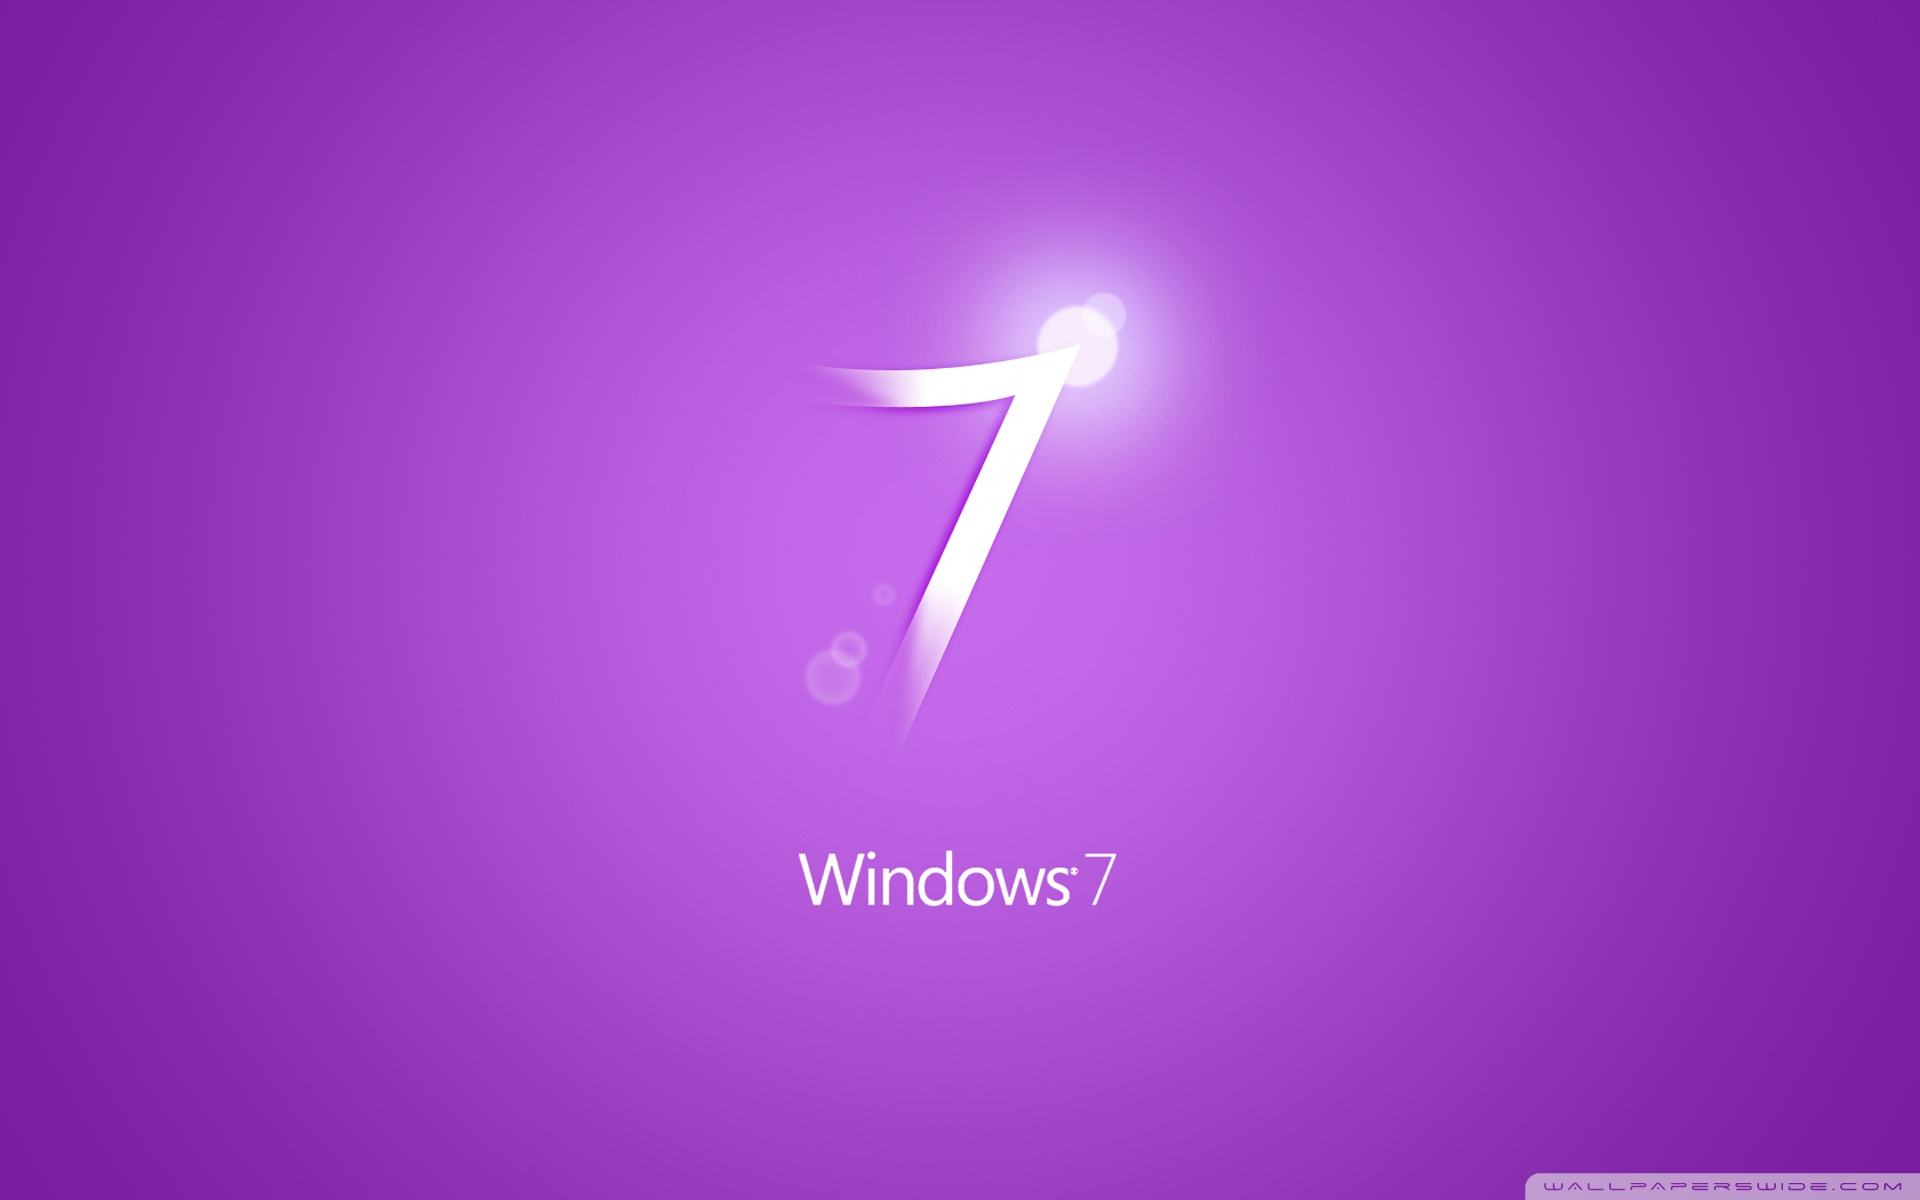 Windows 7 Purple Ultra HD Desktop Background Wallpaper for 4K UHD TV :  Widescreen & UltraWide Desktop & Laptop